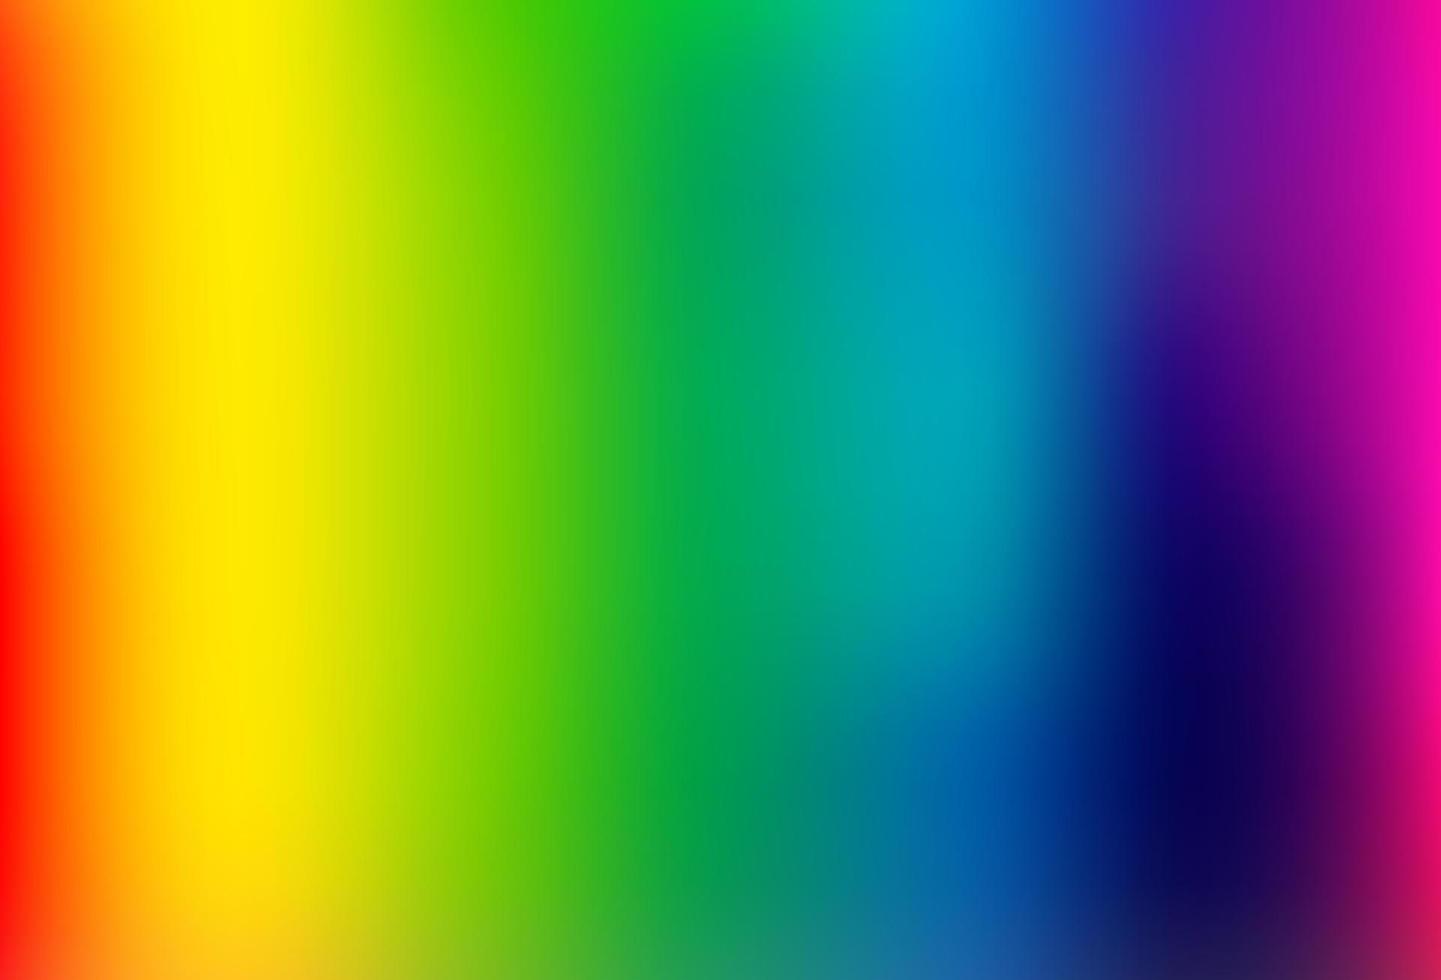 luce multicolore, modello astratto lucido di vettore arcobaleno.